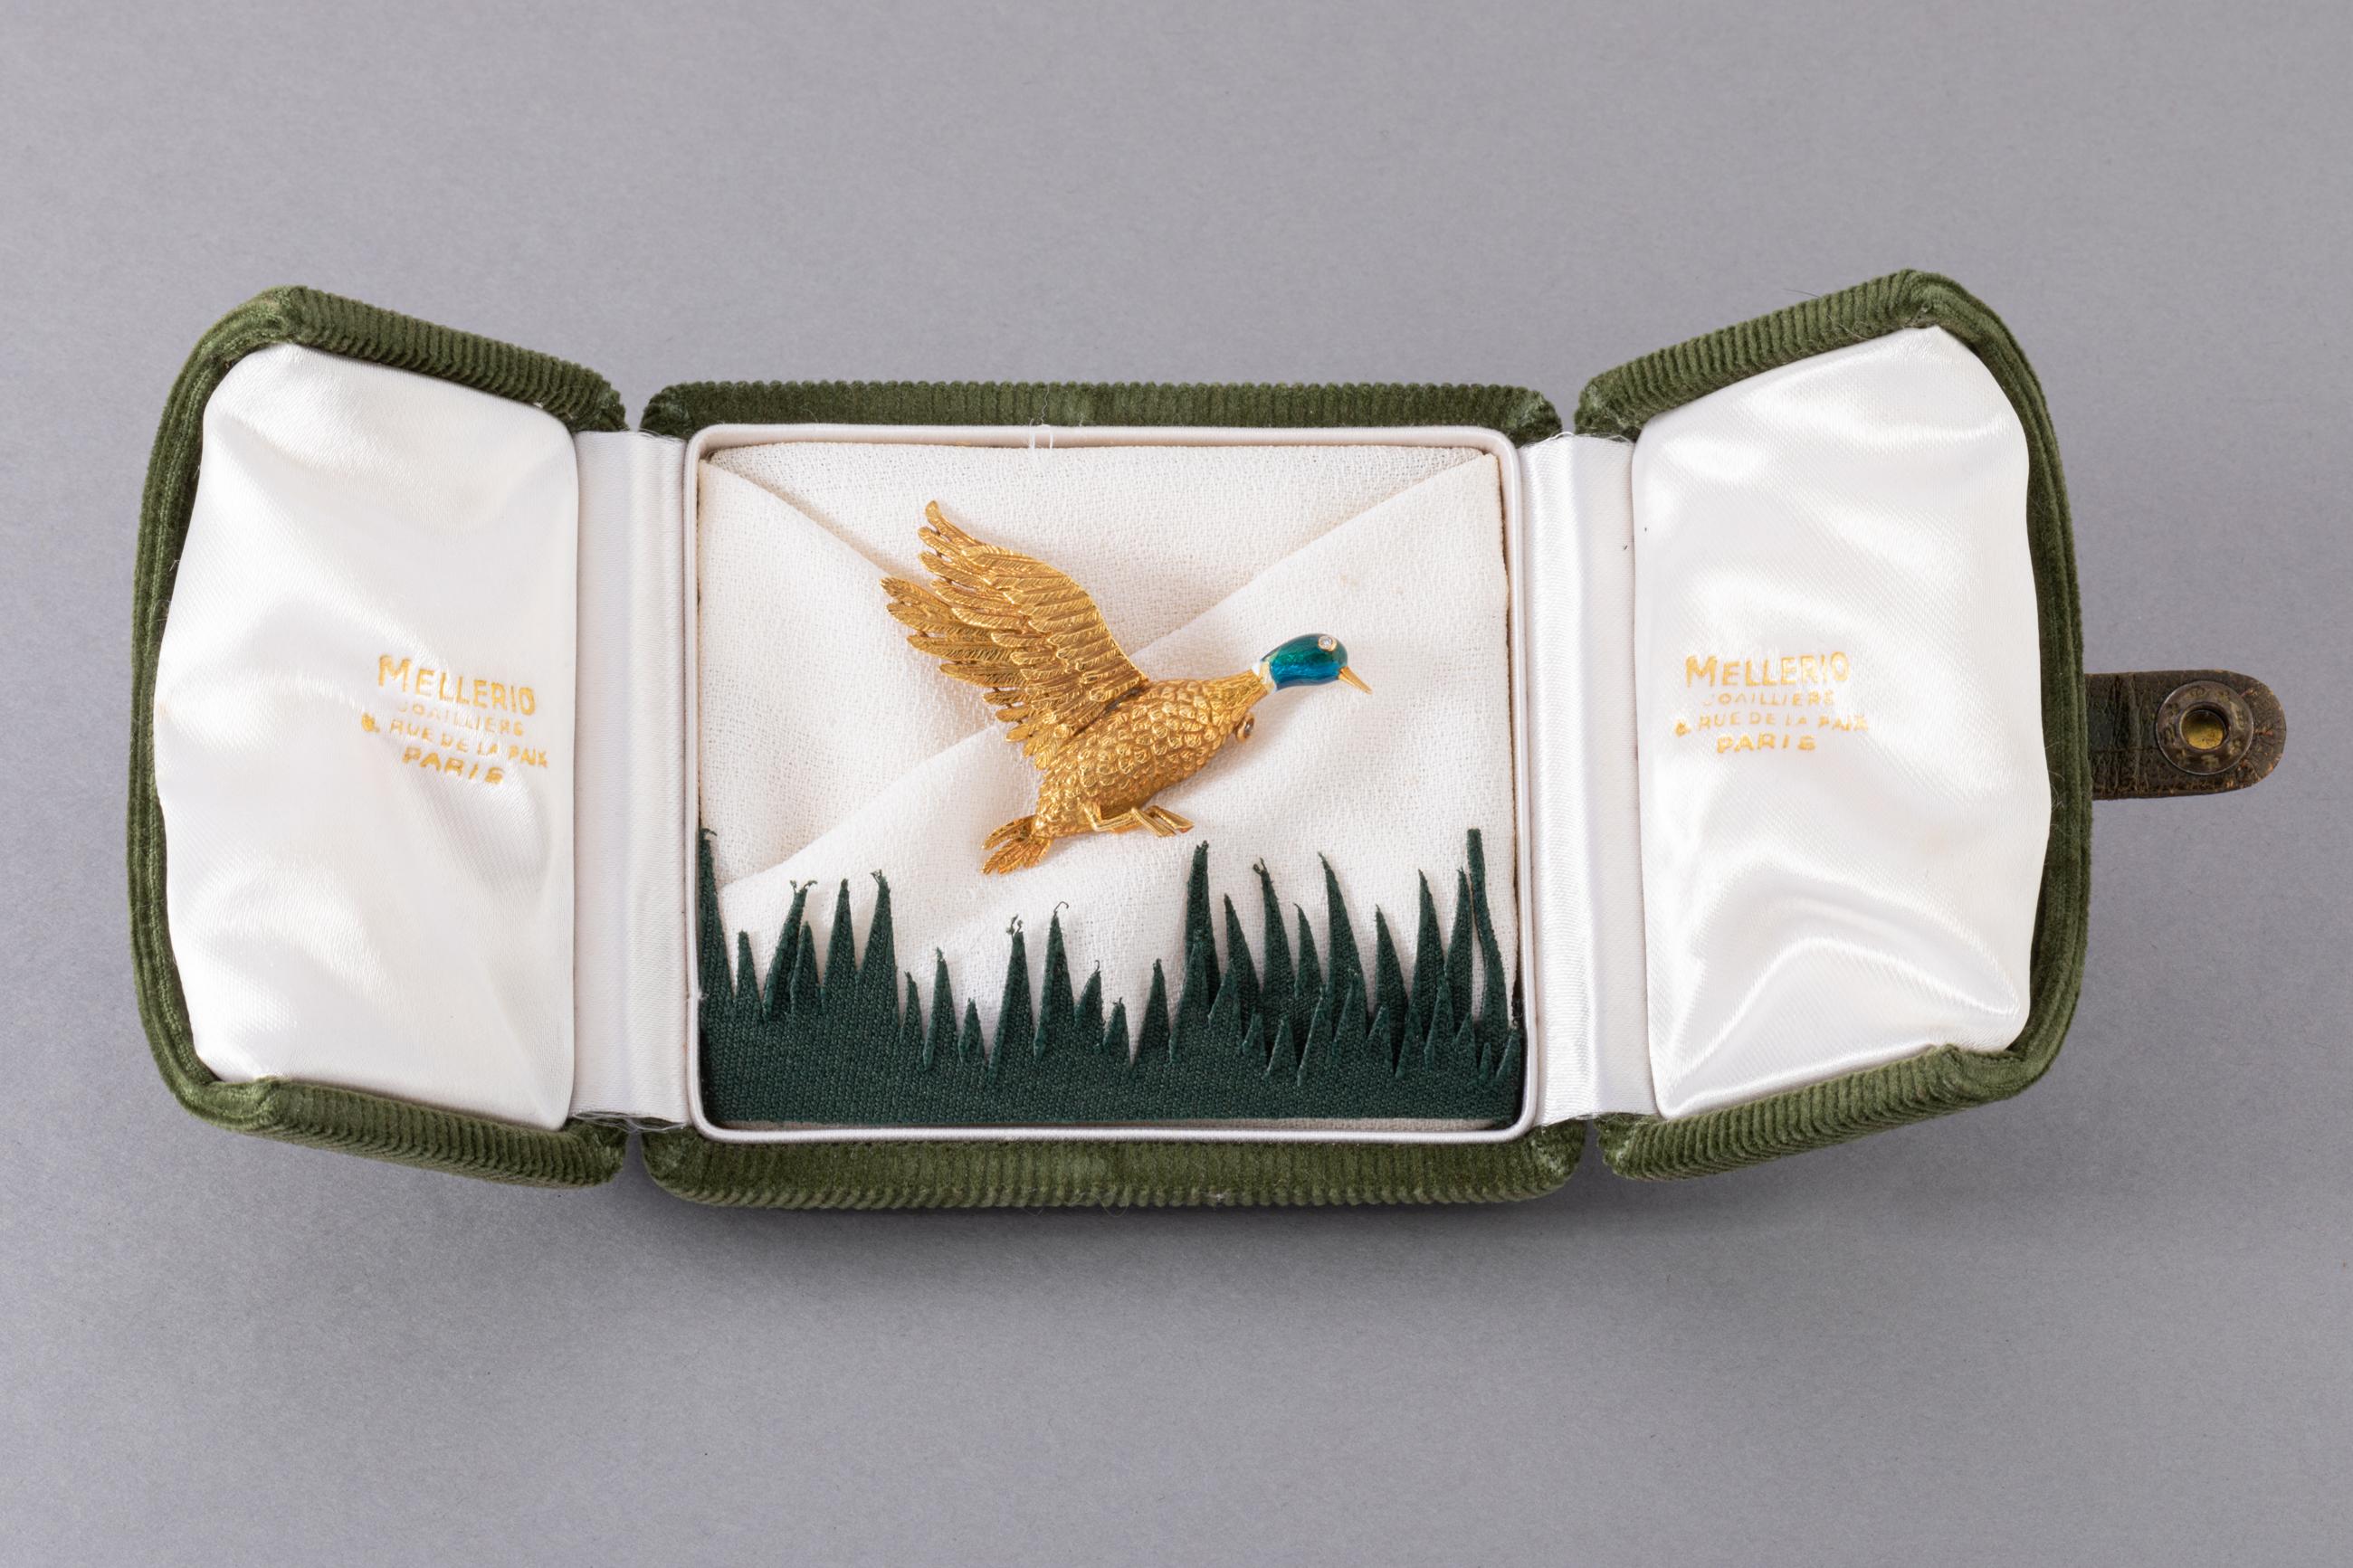 Une jolie broche vintage, fabriquée par Mellerio Paris, dans sa boîte d'origine.
Réalisé en or jaune 18k, émail vert et un diamant.
L'oiseau mesure 4,8n cm.
Poids total : 9,70 grammes